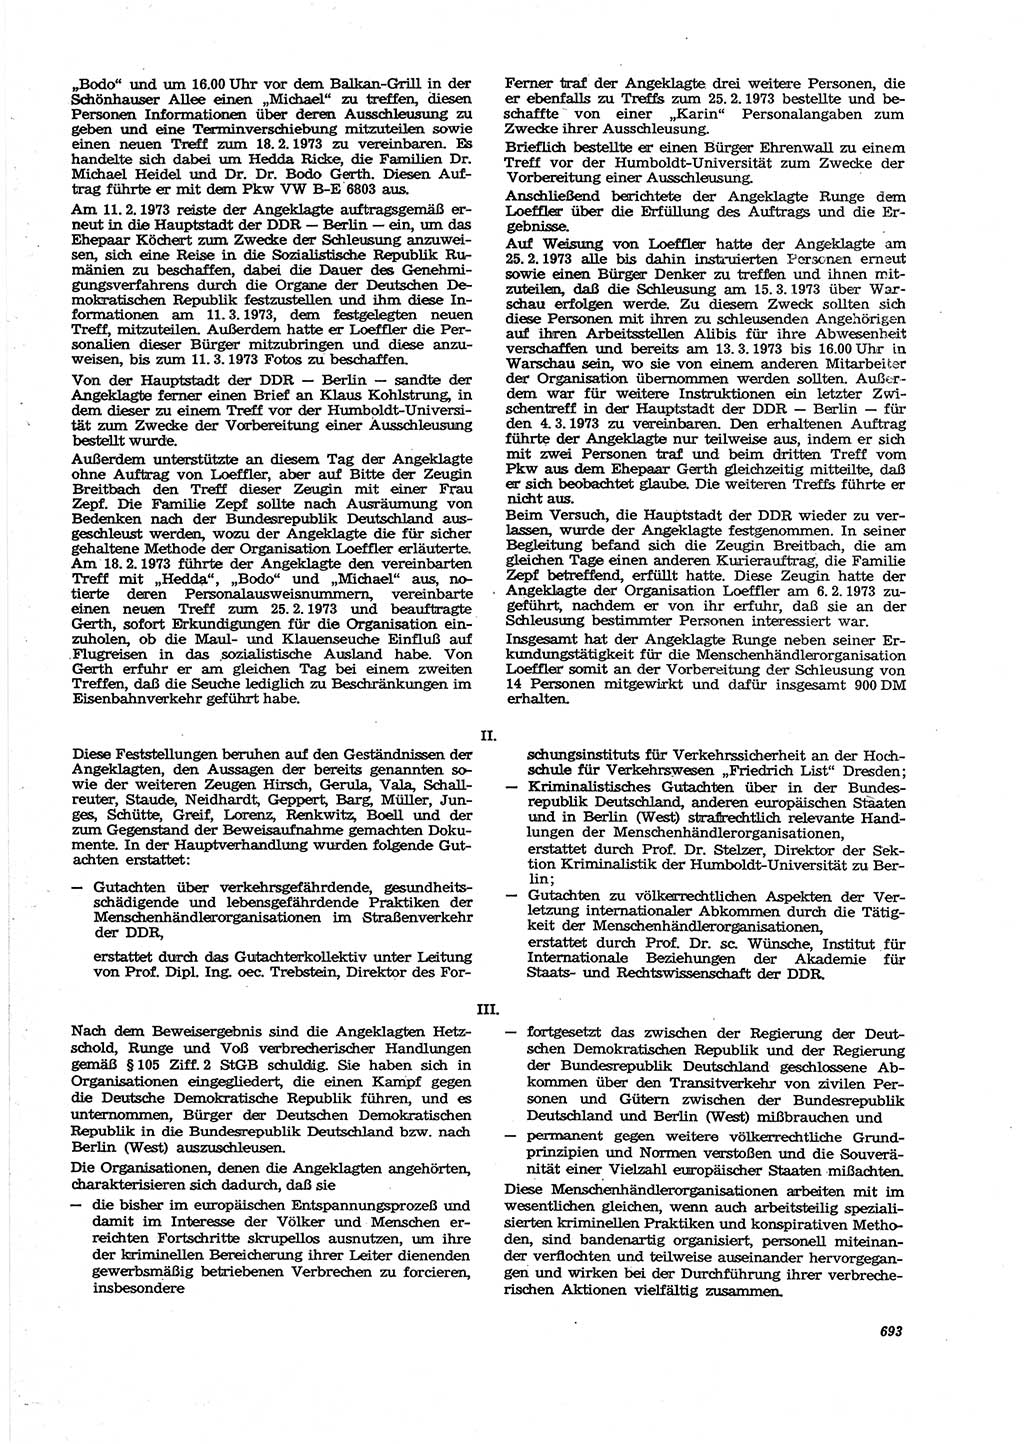 Neue Justiz (NJ), Zeitschrift für Recht und Rechtswissenschaft [Deutsche Demokratische Republik (DDR)], 27. Jahrgang 1973, Seite 693 (NJ DDR 1973, S. 693)